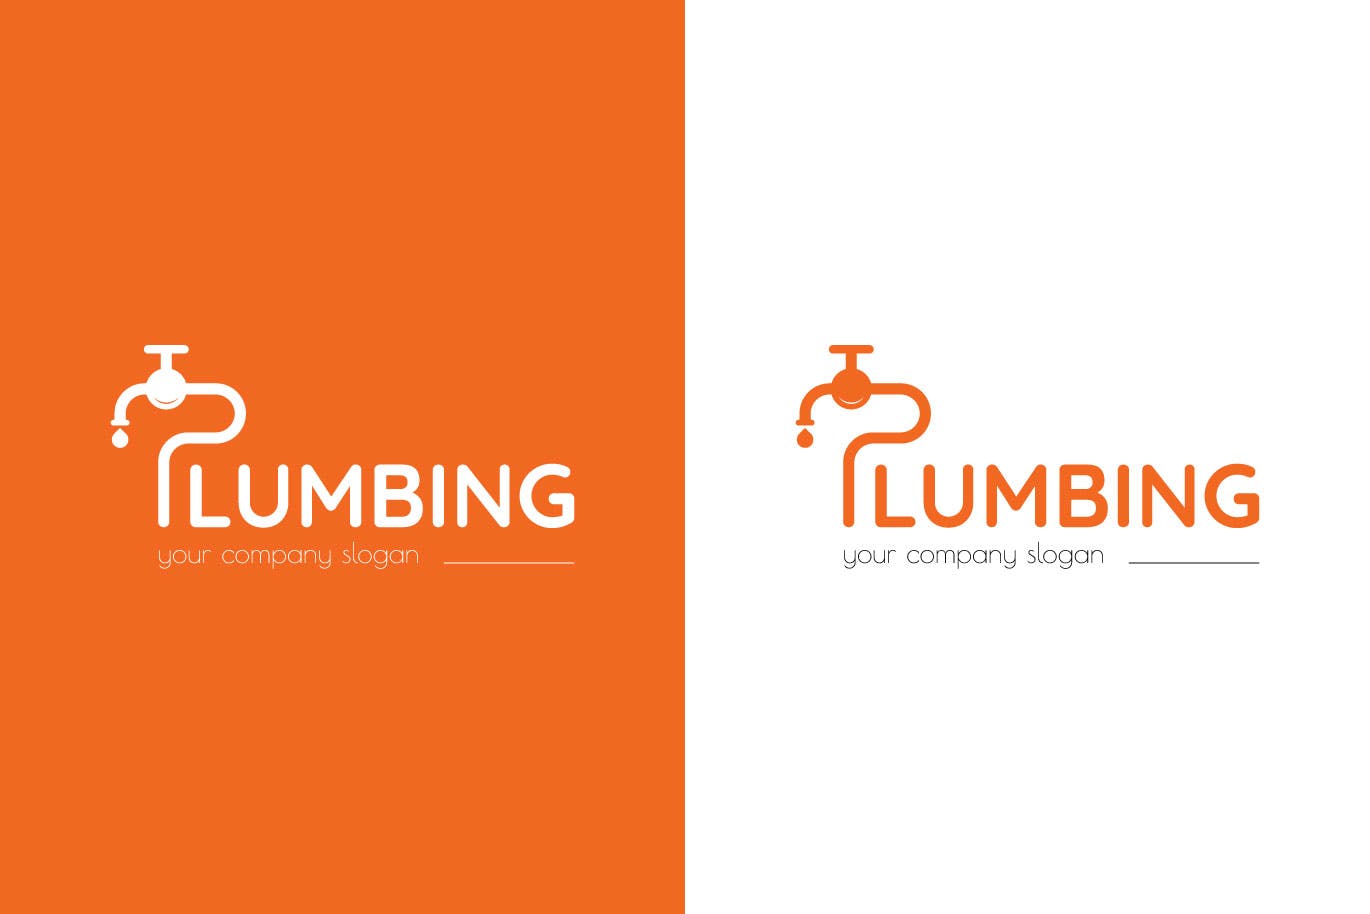 字母P图形供水设施品牌Logo设计非凡图库精选模板 Plumbing Business Logo Template插图(1)